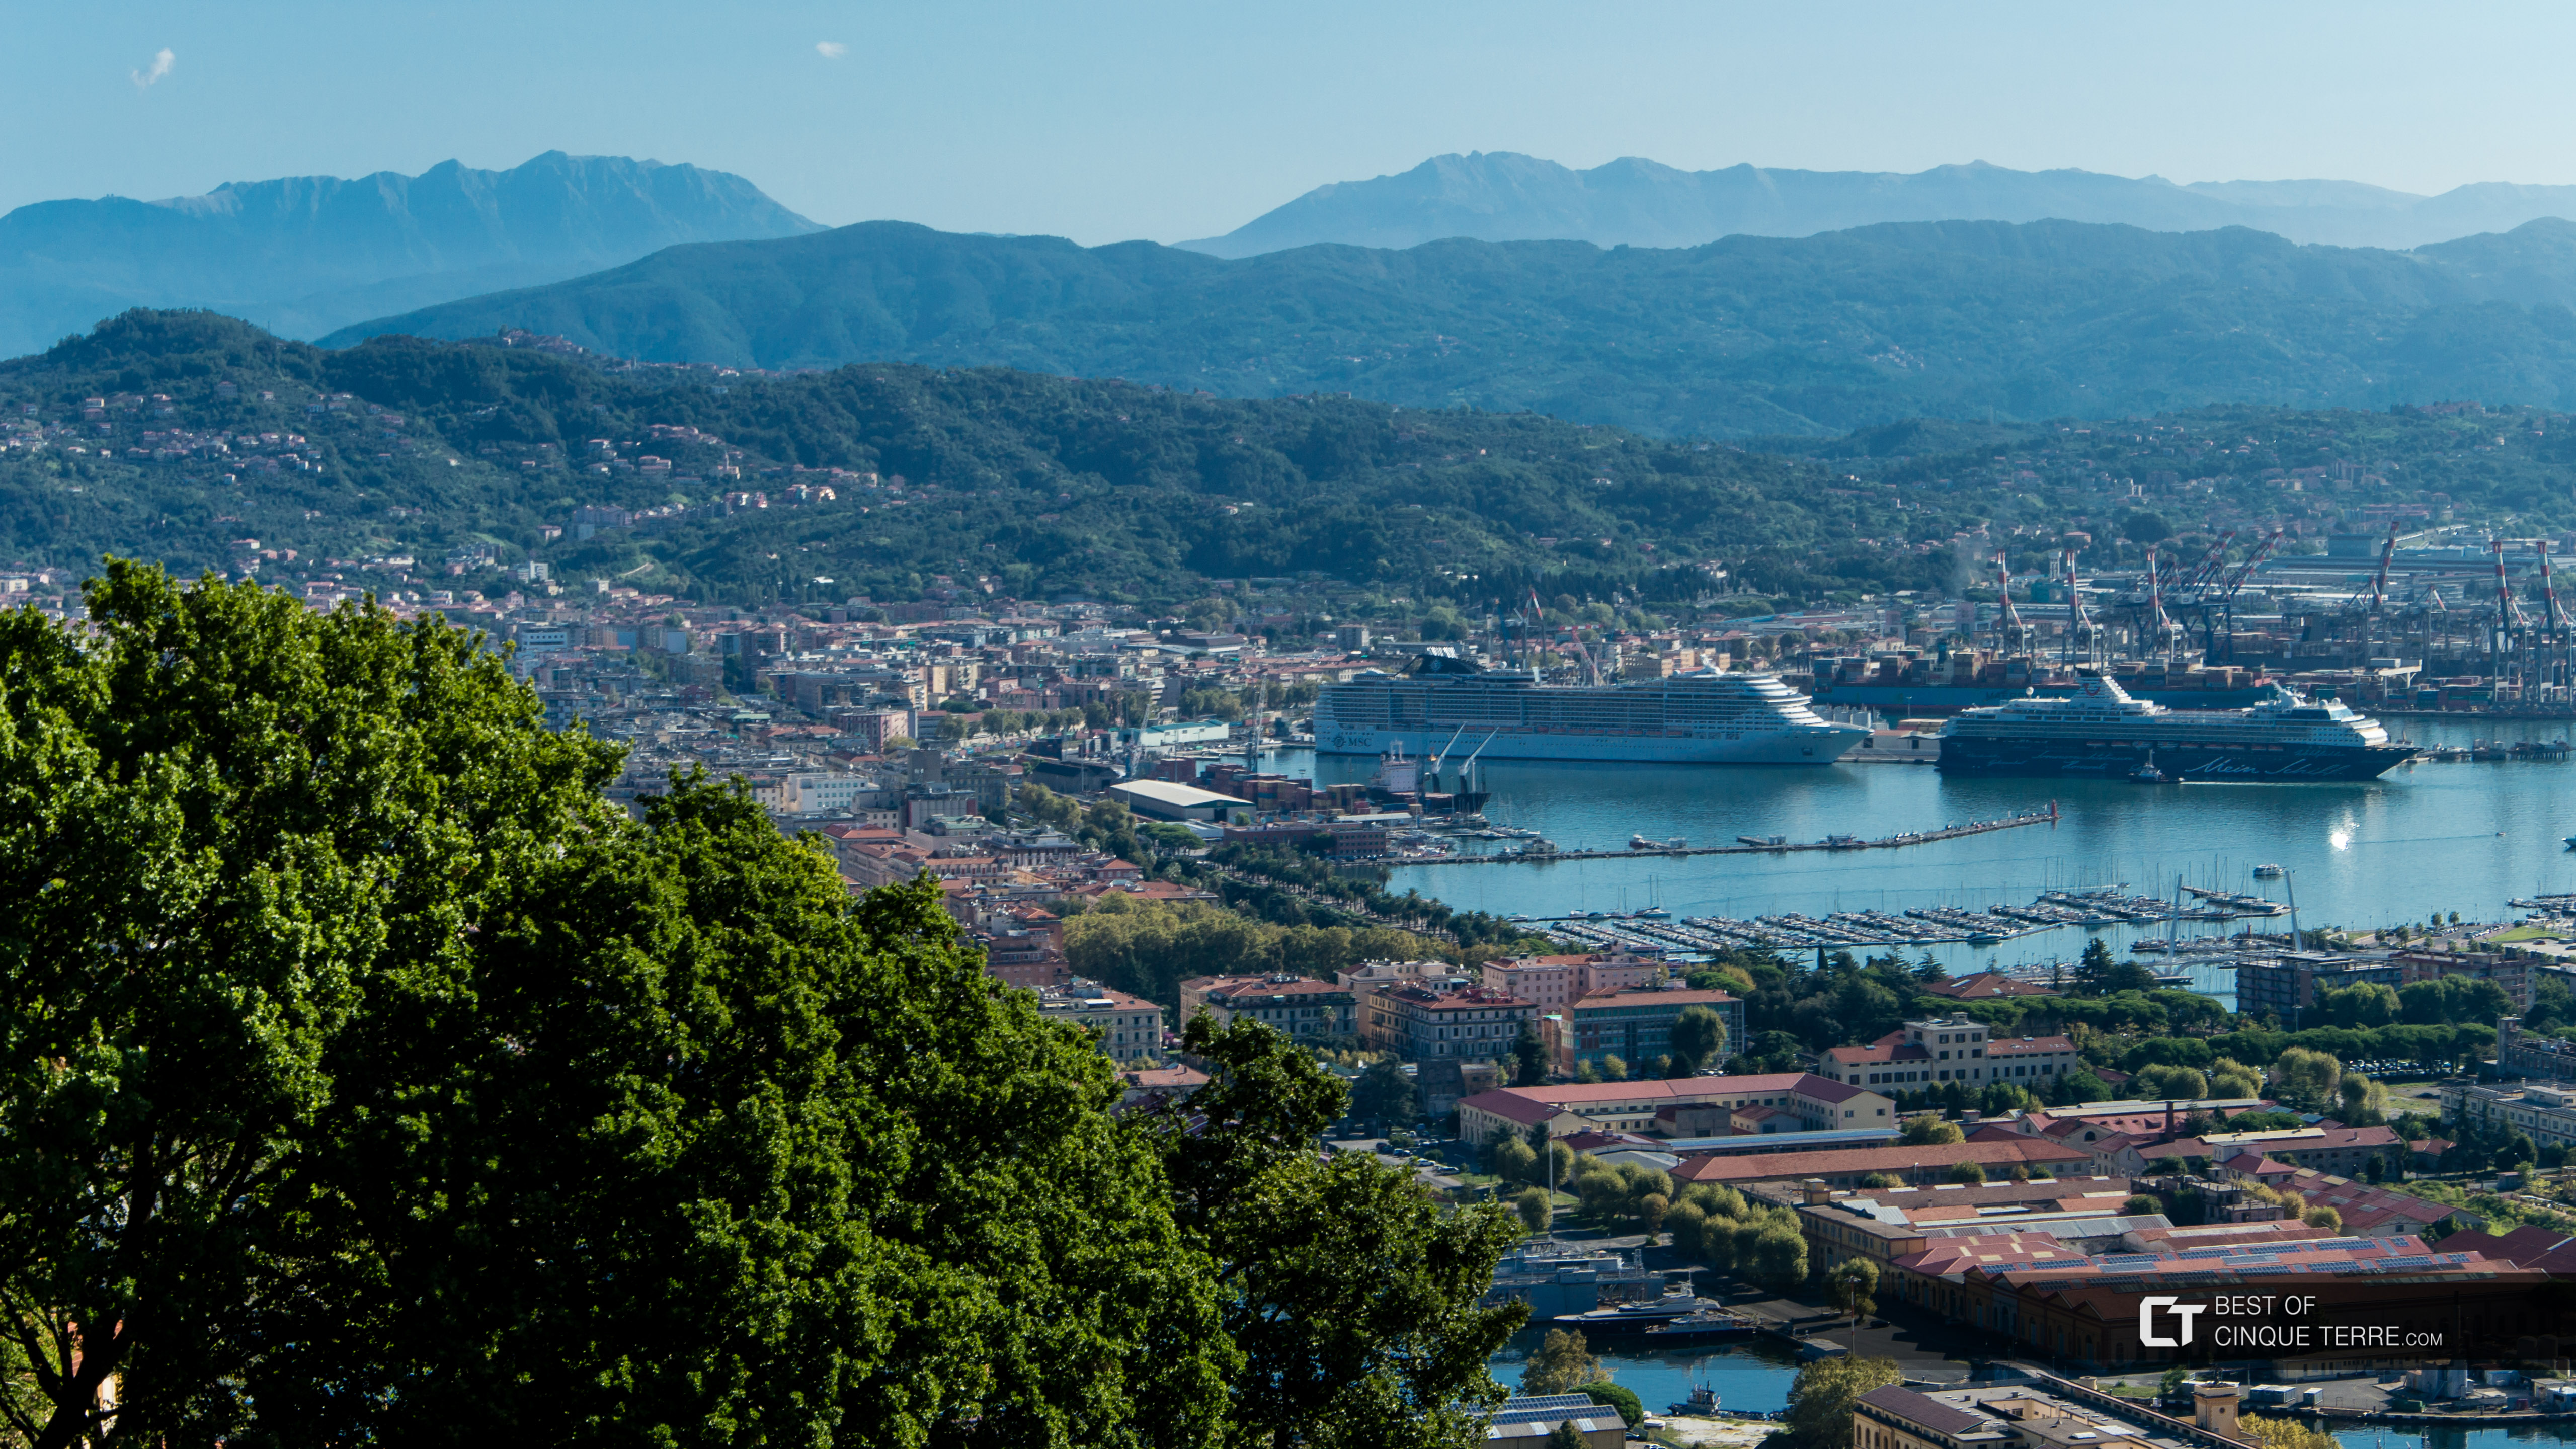 Cruise ship in the port, view from the road to Riomaggiore, La Spezia, Italy